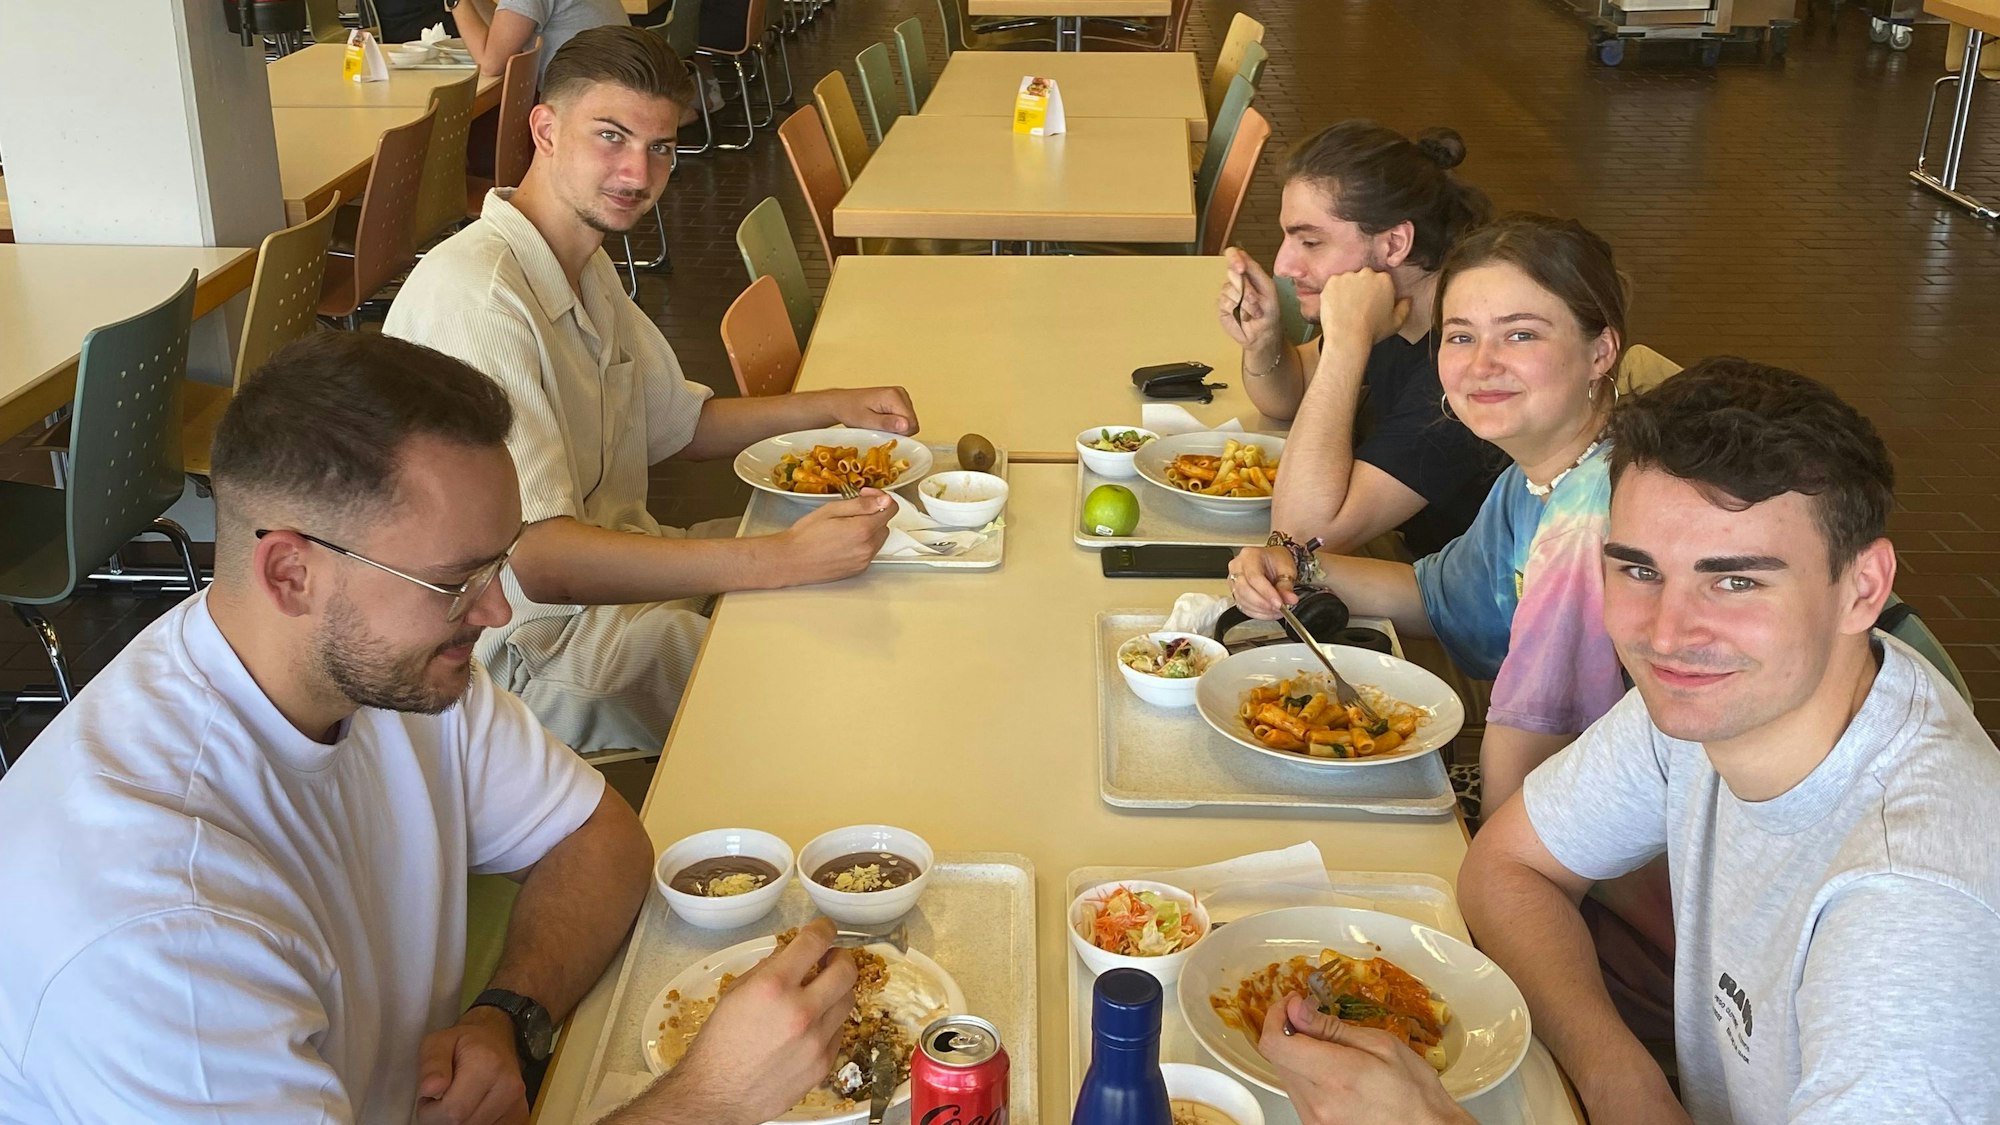 Auf dem Bild sieht man fünf junge Erwachsene beim Essen.